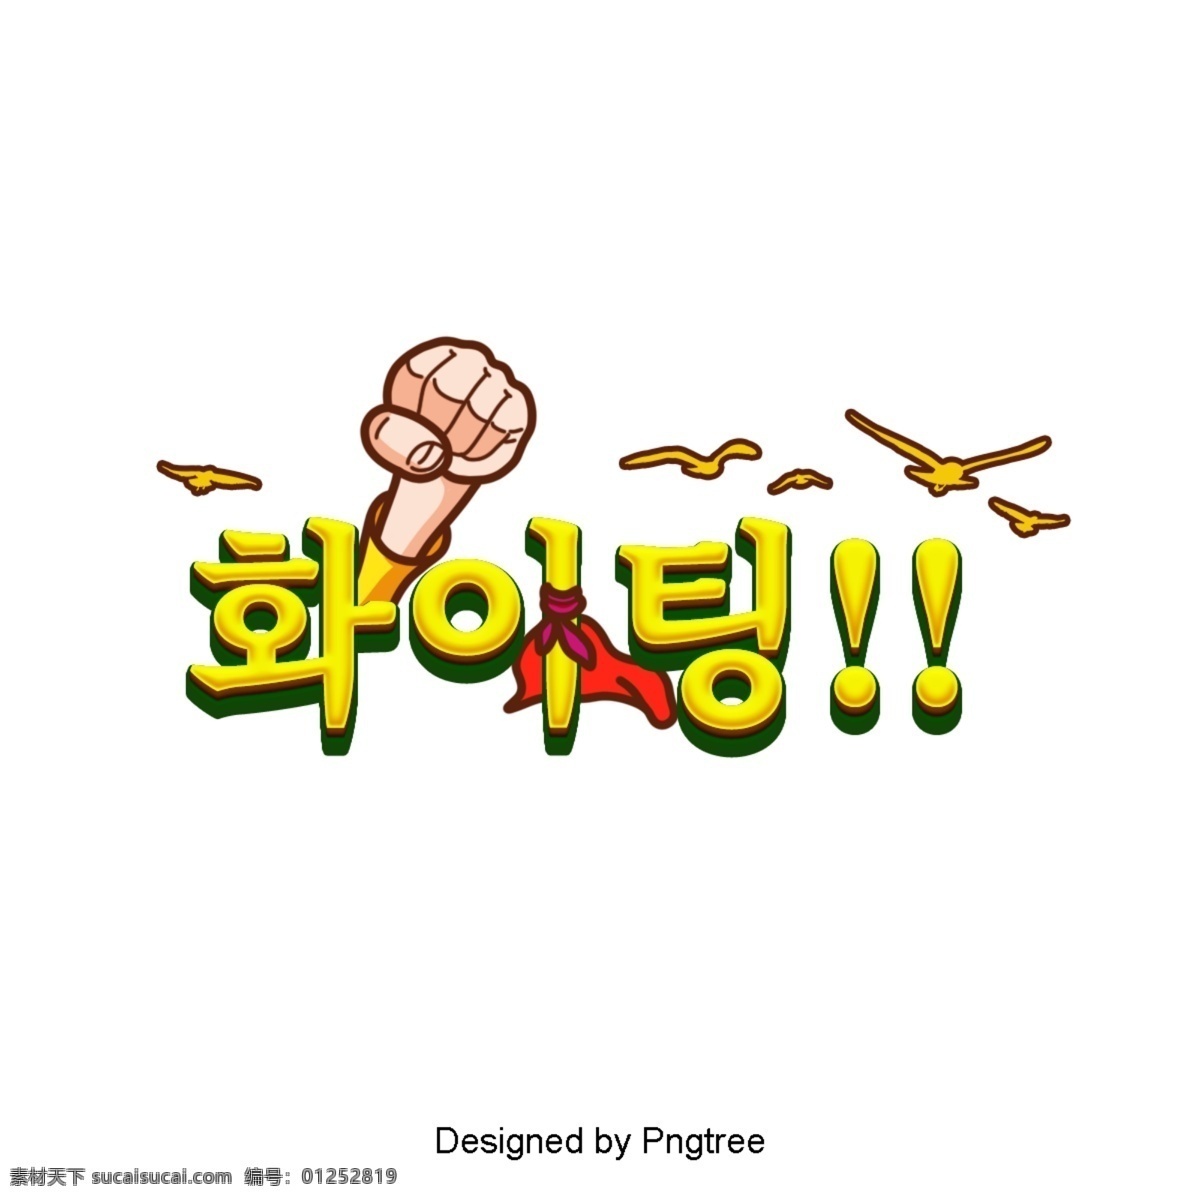 气体 常用 韩国 卡通 字体 场景 鼓励 黄色图标 斗篷 拳头 通常 希望